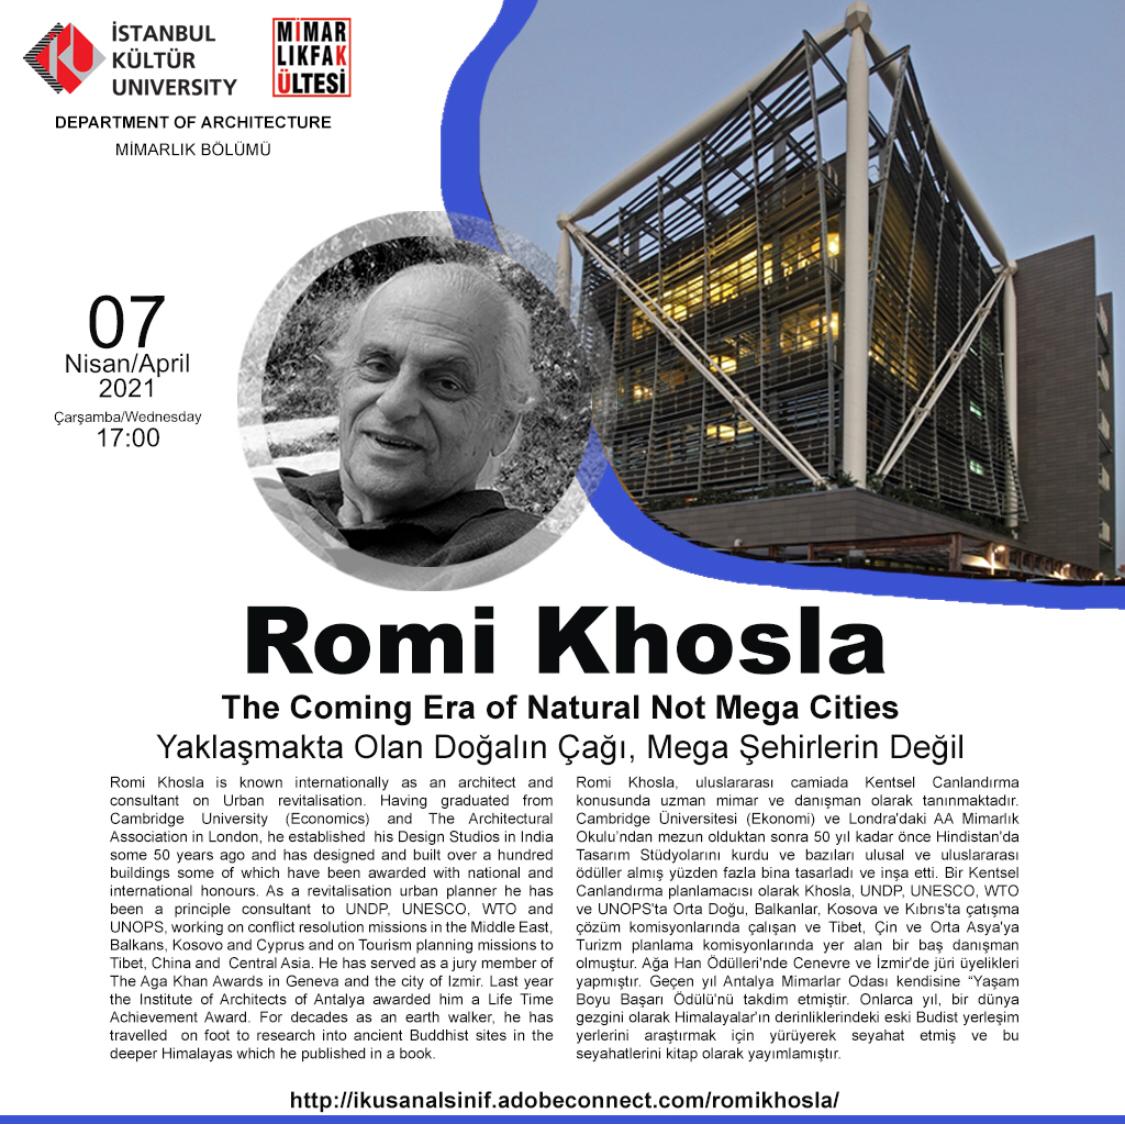 Yaşam Boyu Başarı Ödülü Sahibi Ünlü Mimar Romi Khosla, İKÜ Mimarlık Bölümü'nün Konuğu Olacak